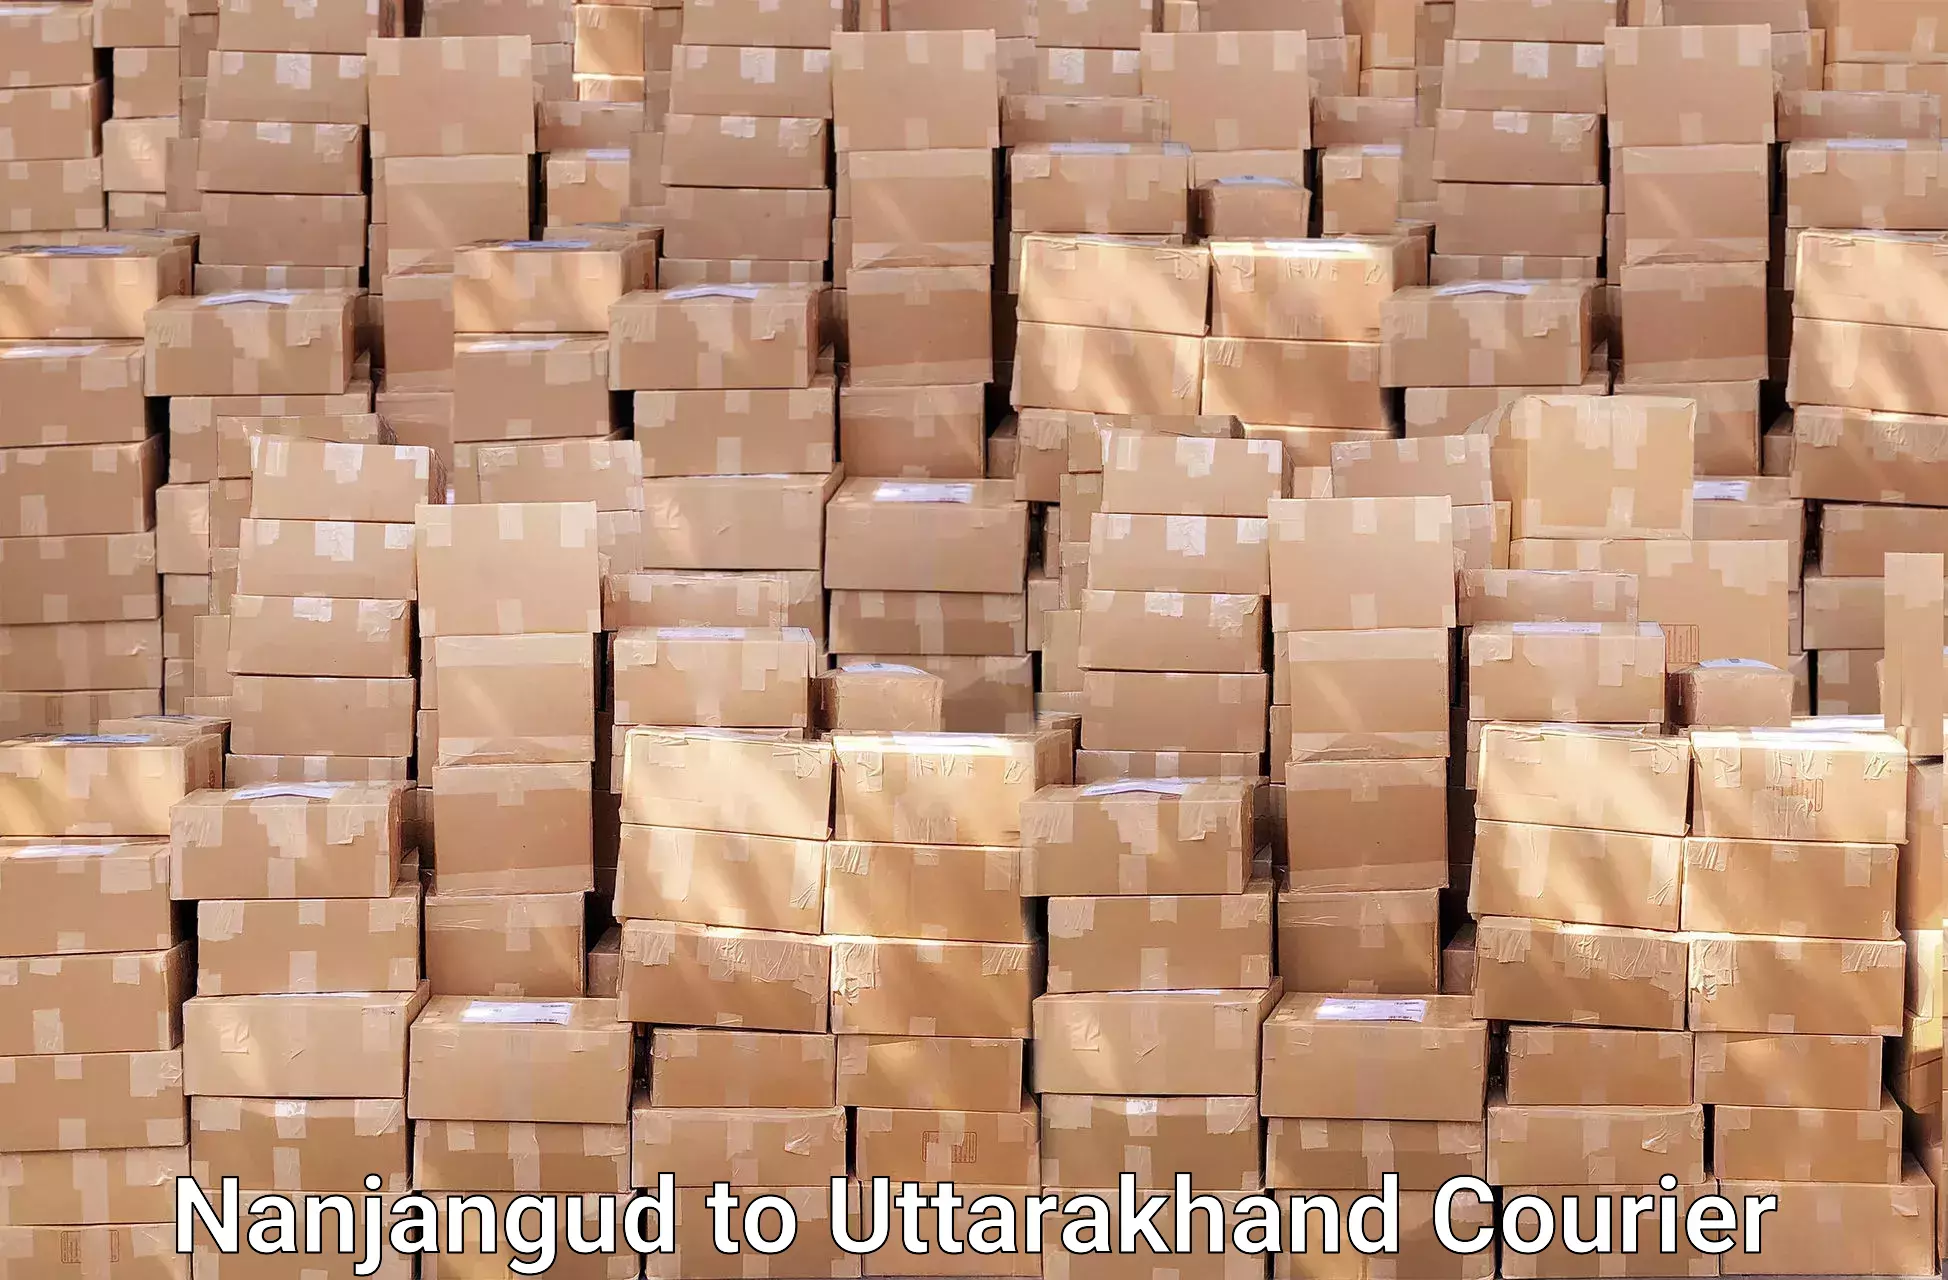 Trusted moving company Nanjangud to Uttarakhand